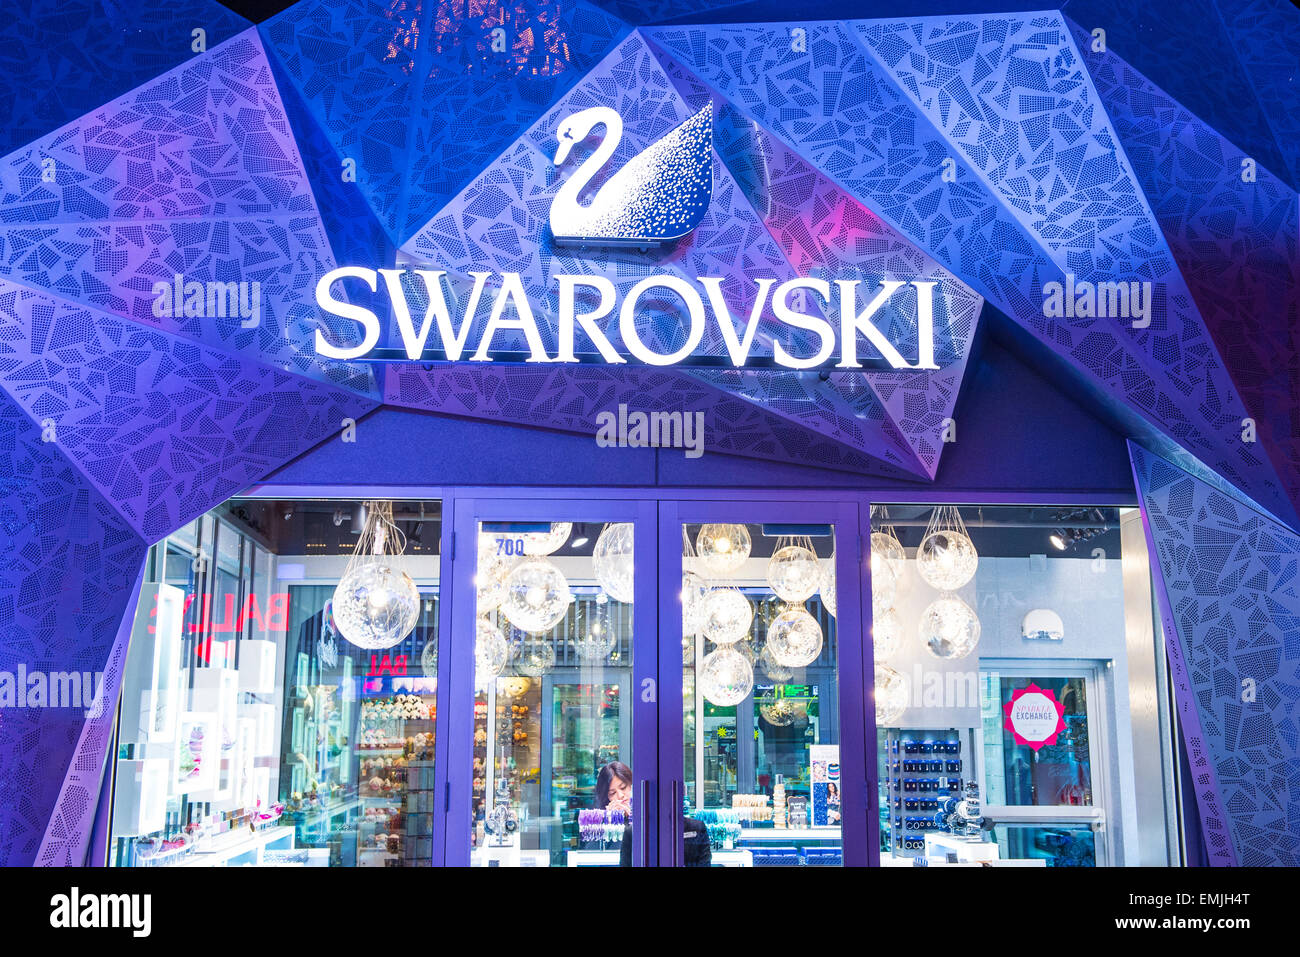 The Swarovski shop in Las Vegas Stock Photo - Alamy